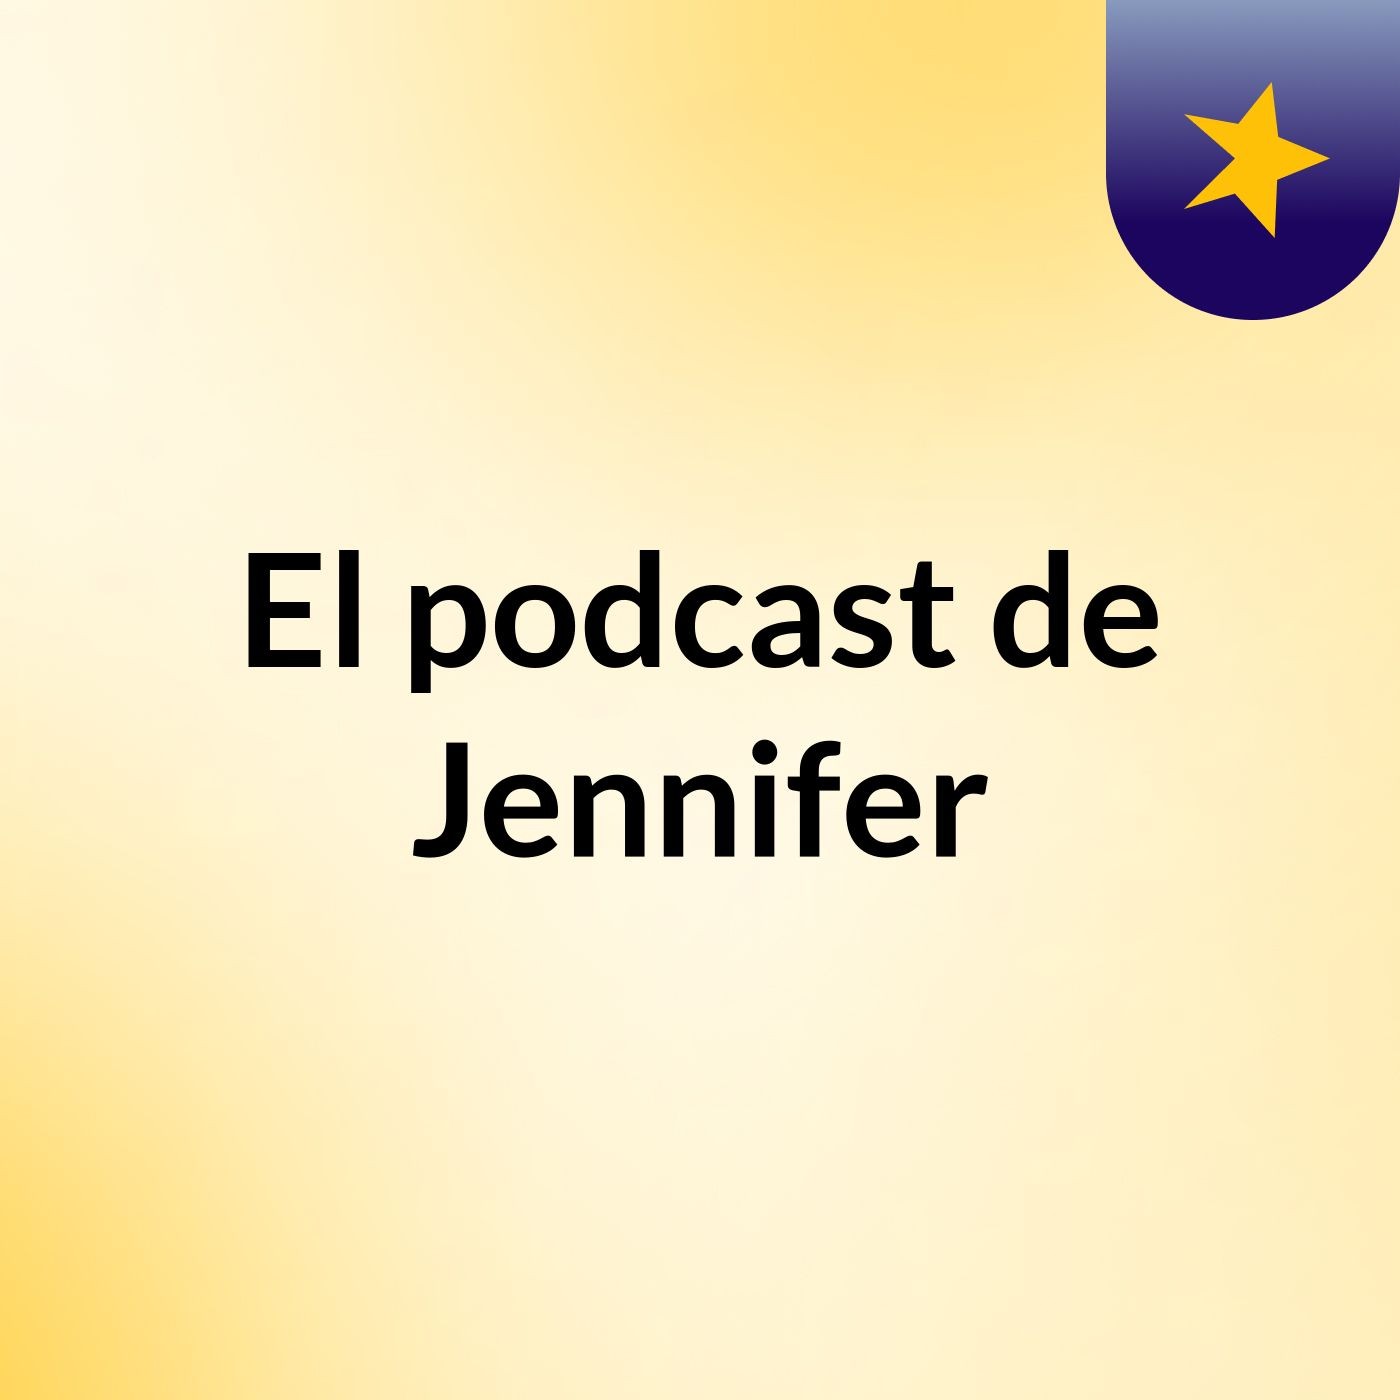 El podcast de Jennifer